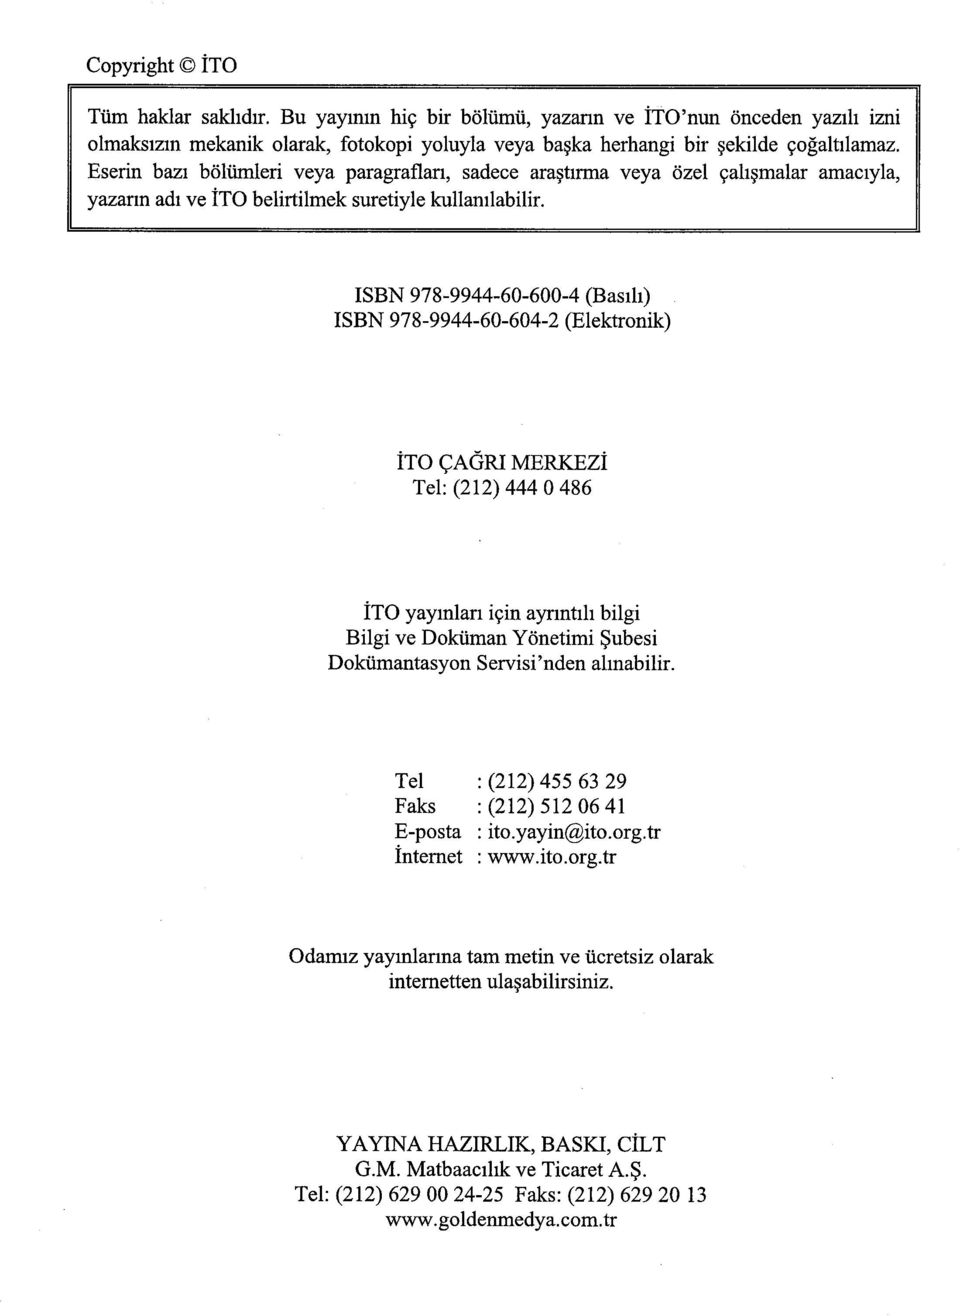 ISBN 978-9944-60-600-4 (Basılı) ISBN 978-9944-60-604-2 (Elektronik) ÎTO ÇAĞRI MERKEZÎ Tel: (212) 444 0 486 ÎTO yayınları için ayrıntılı bilgi Bilgi ve Doküman Yönetimi Şubesi Dokümantasyon